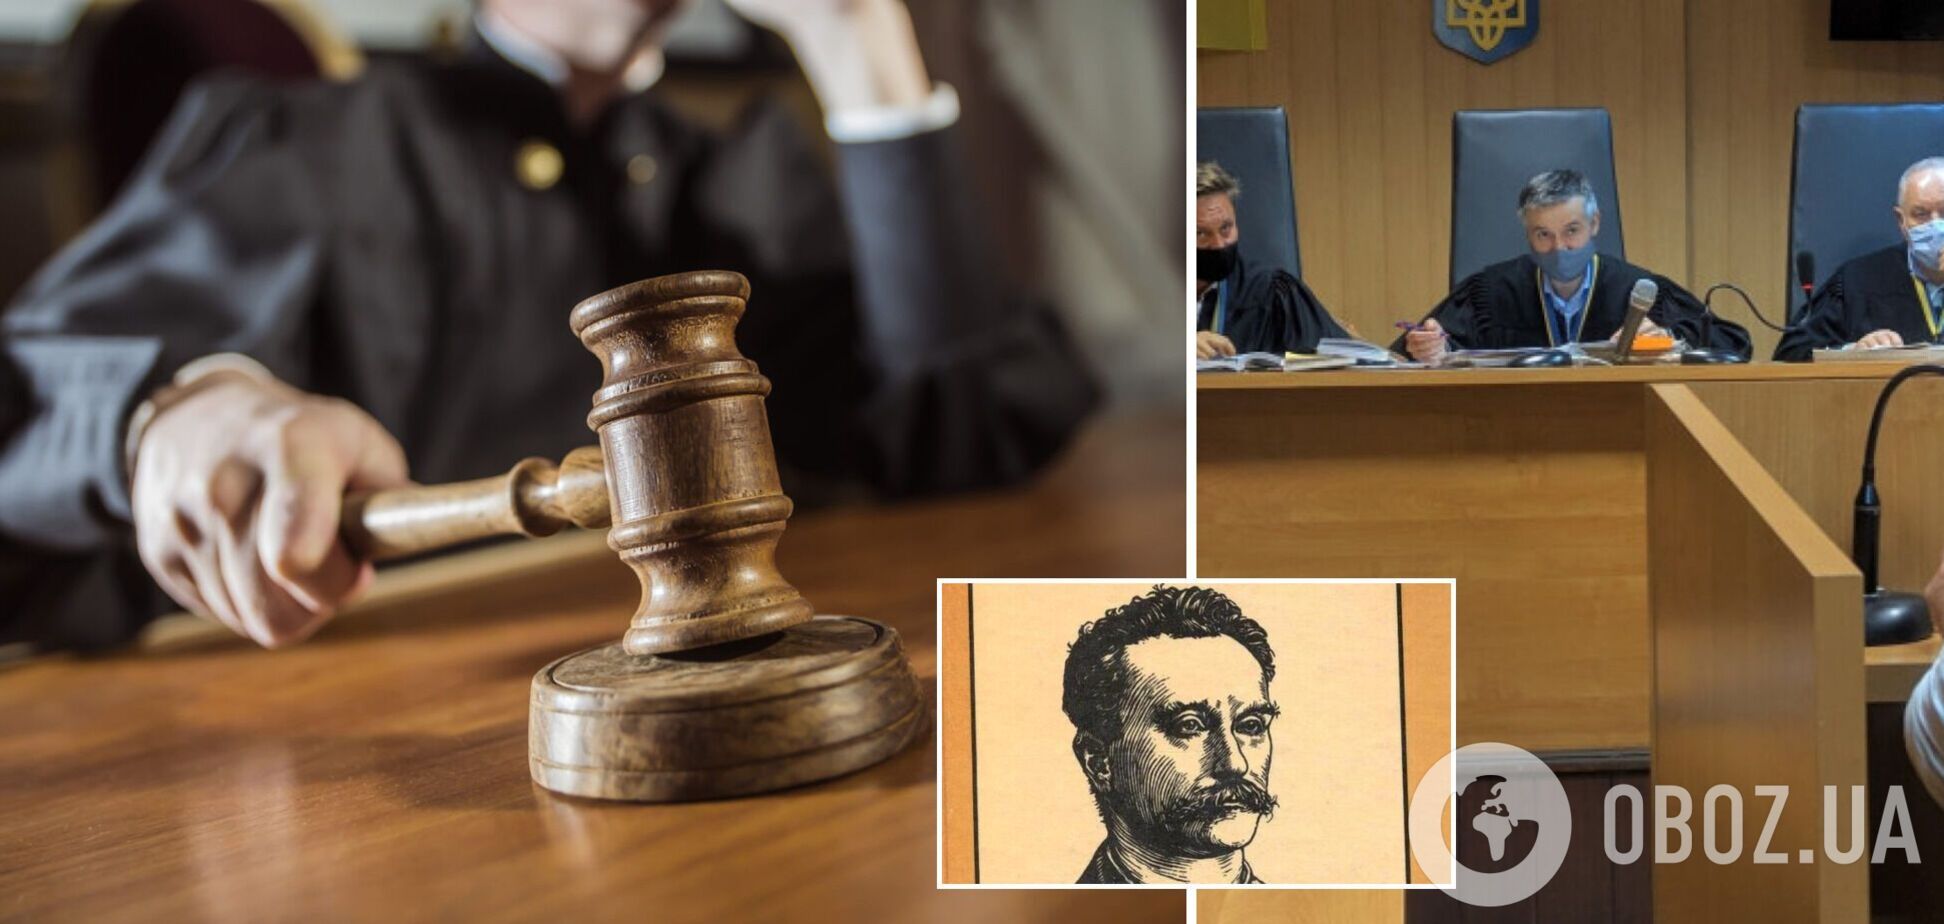 Перевоспитание классикой: судья из Одессы присудил молодому вору прочесть Толстого и Франко